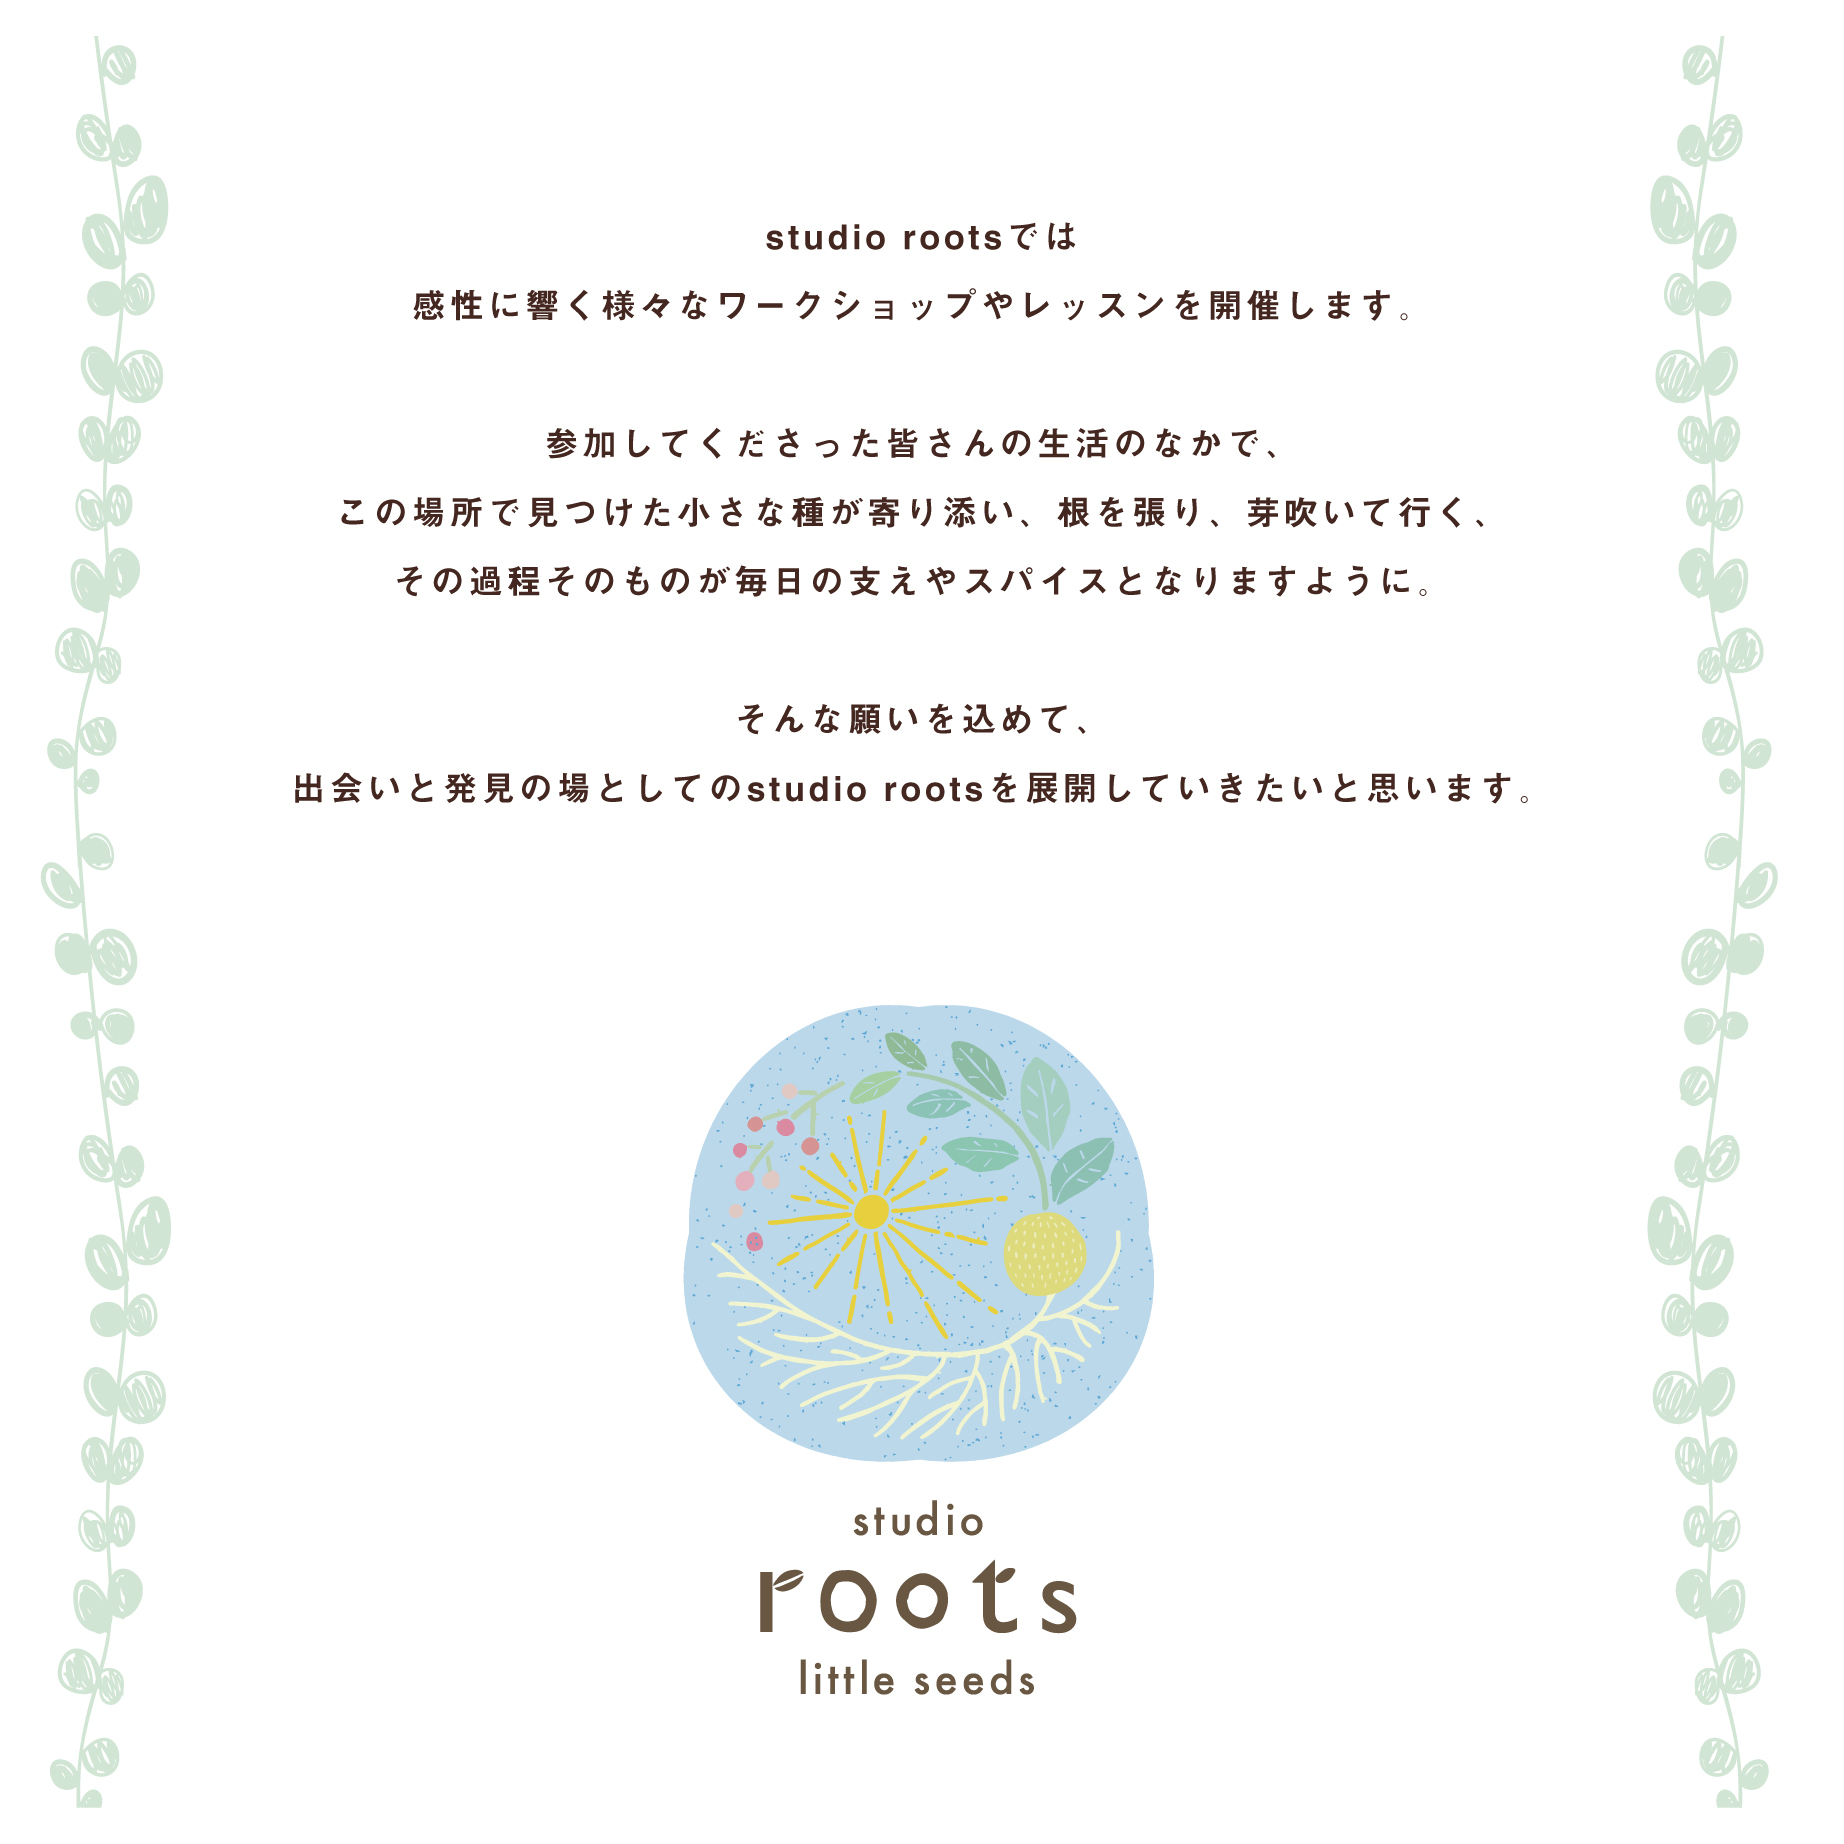 【roots】11月のスケジュール